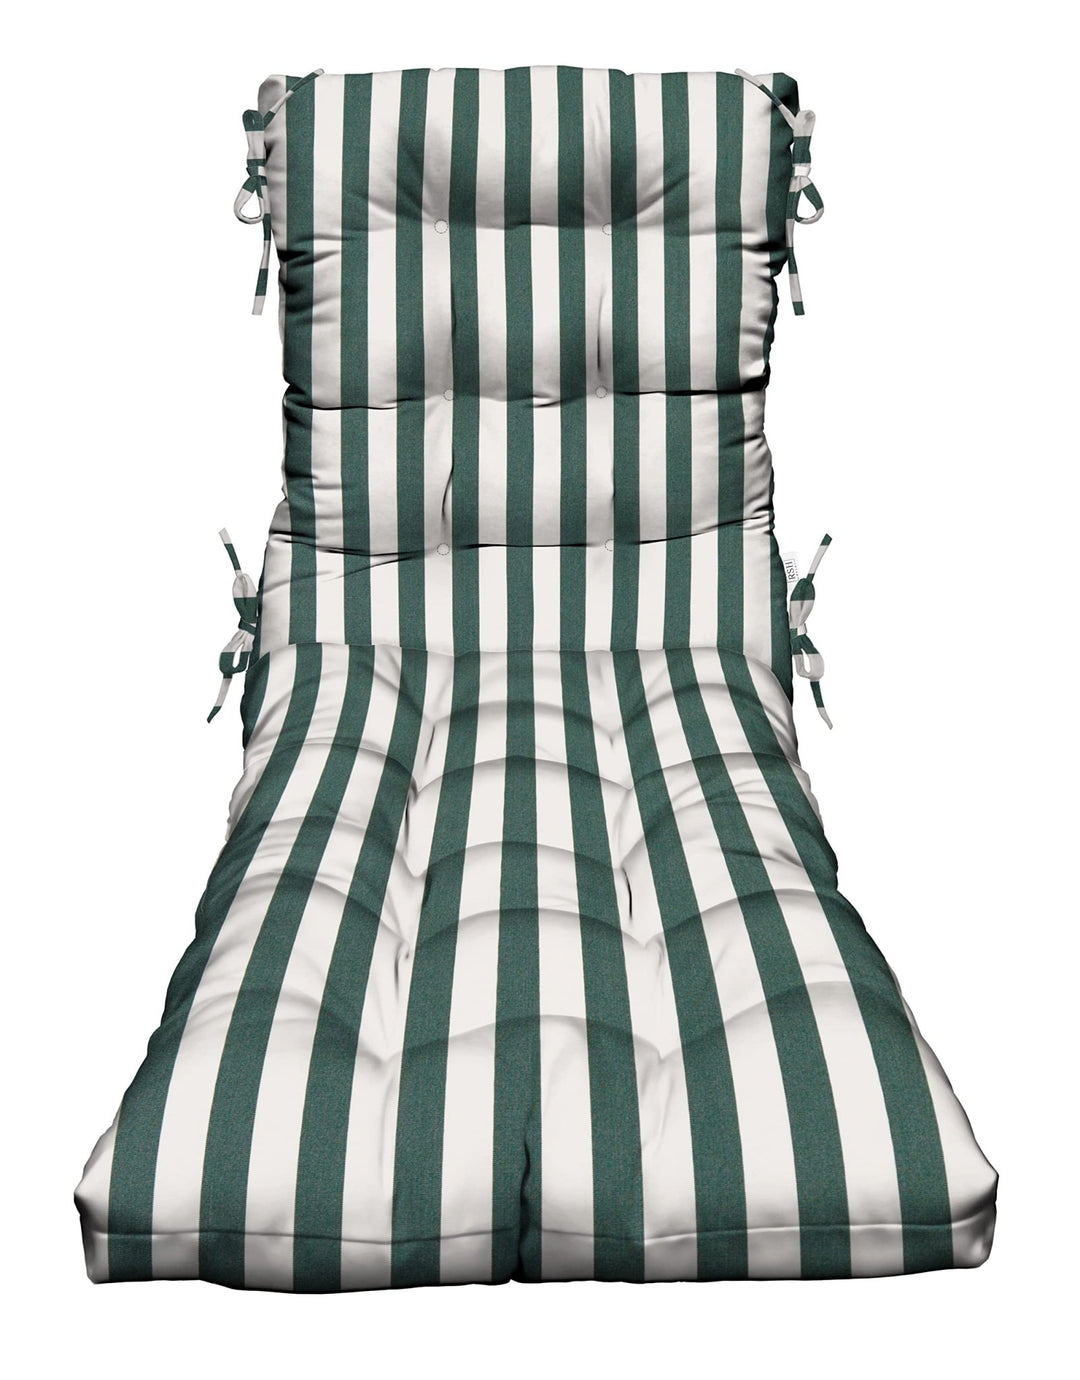 Chaise Lounge Chair Cushion, Tufted, 72" H x 22" W", Sunbrella Patterns - RSH Decor